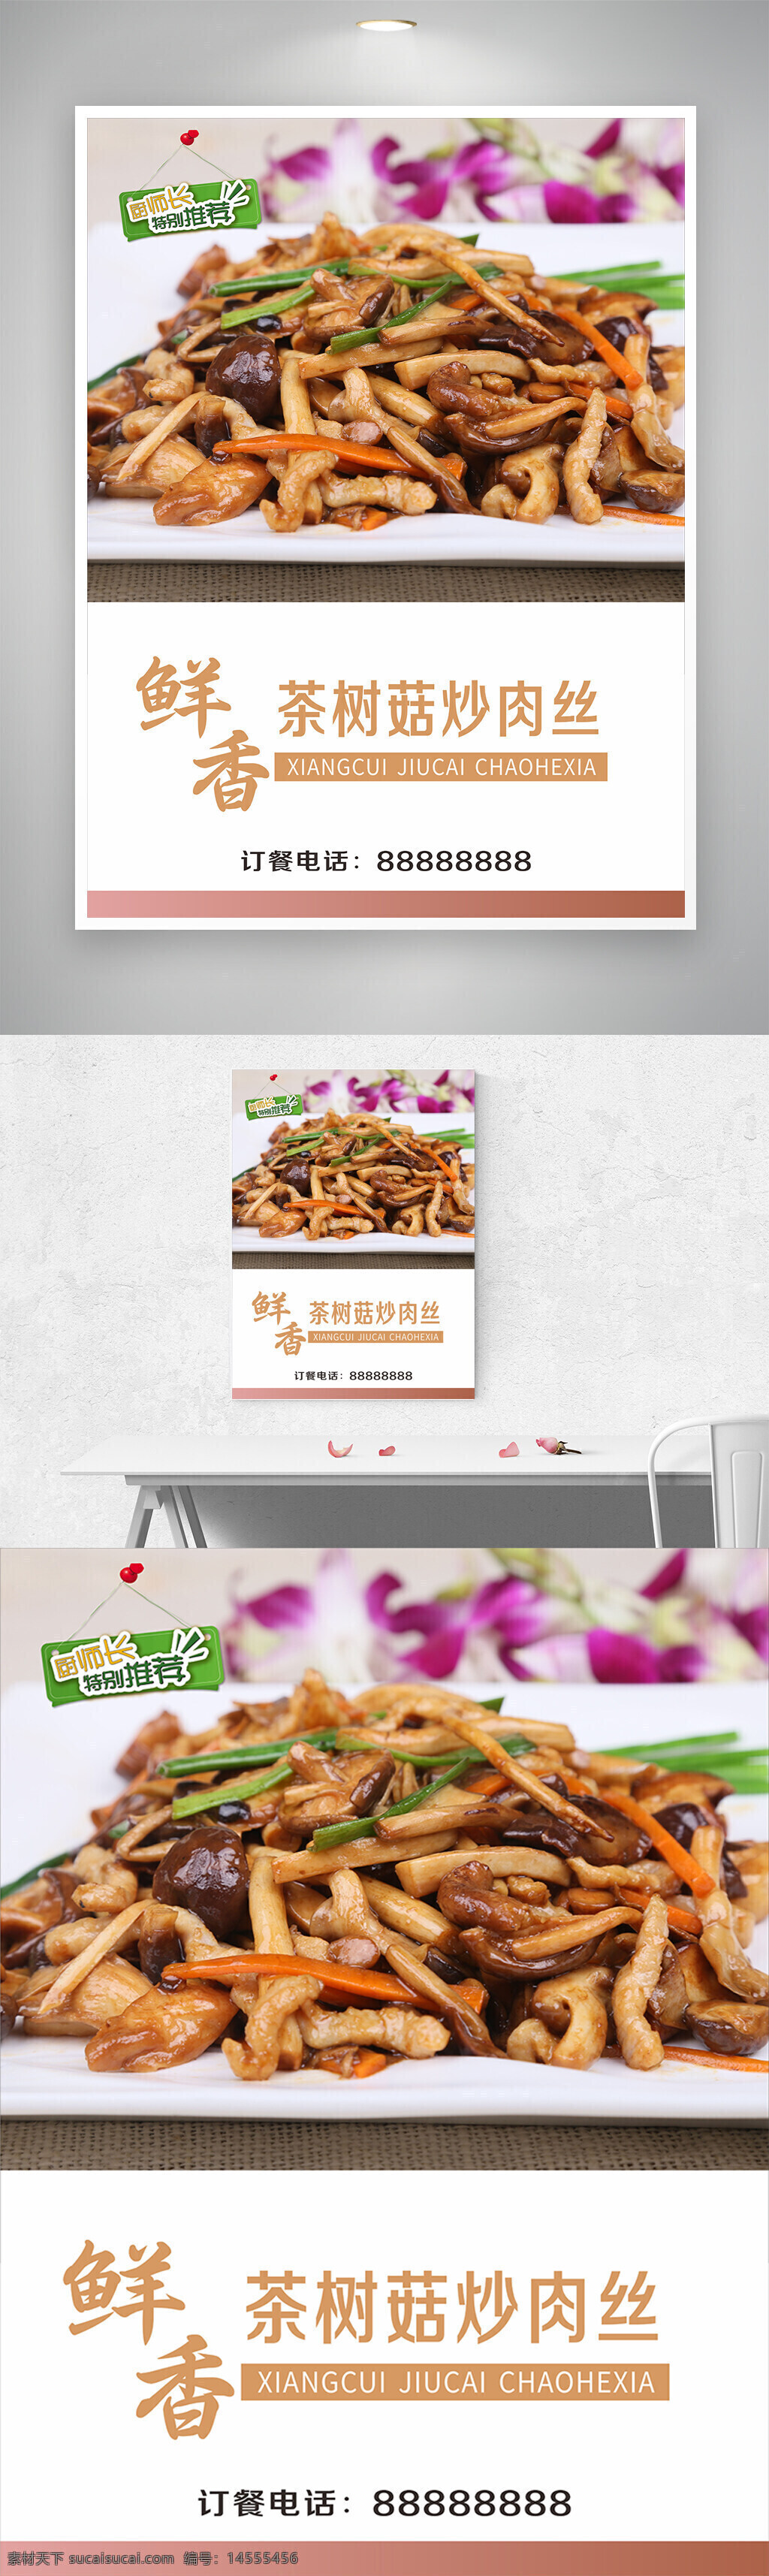 鲜香茶树菇炒肉丝海报 中国特色美食 猪肉 茶树菇 新菜上市 新品上市